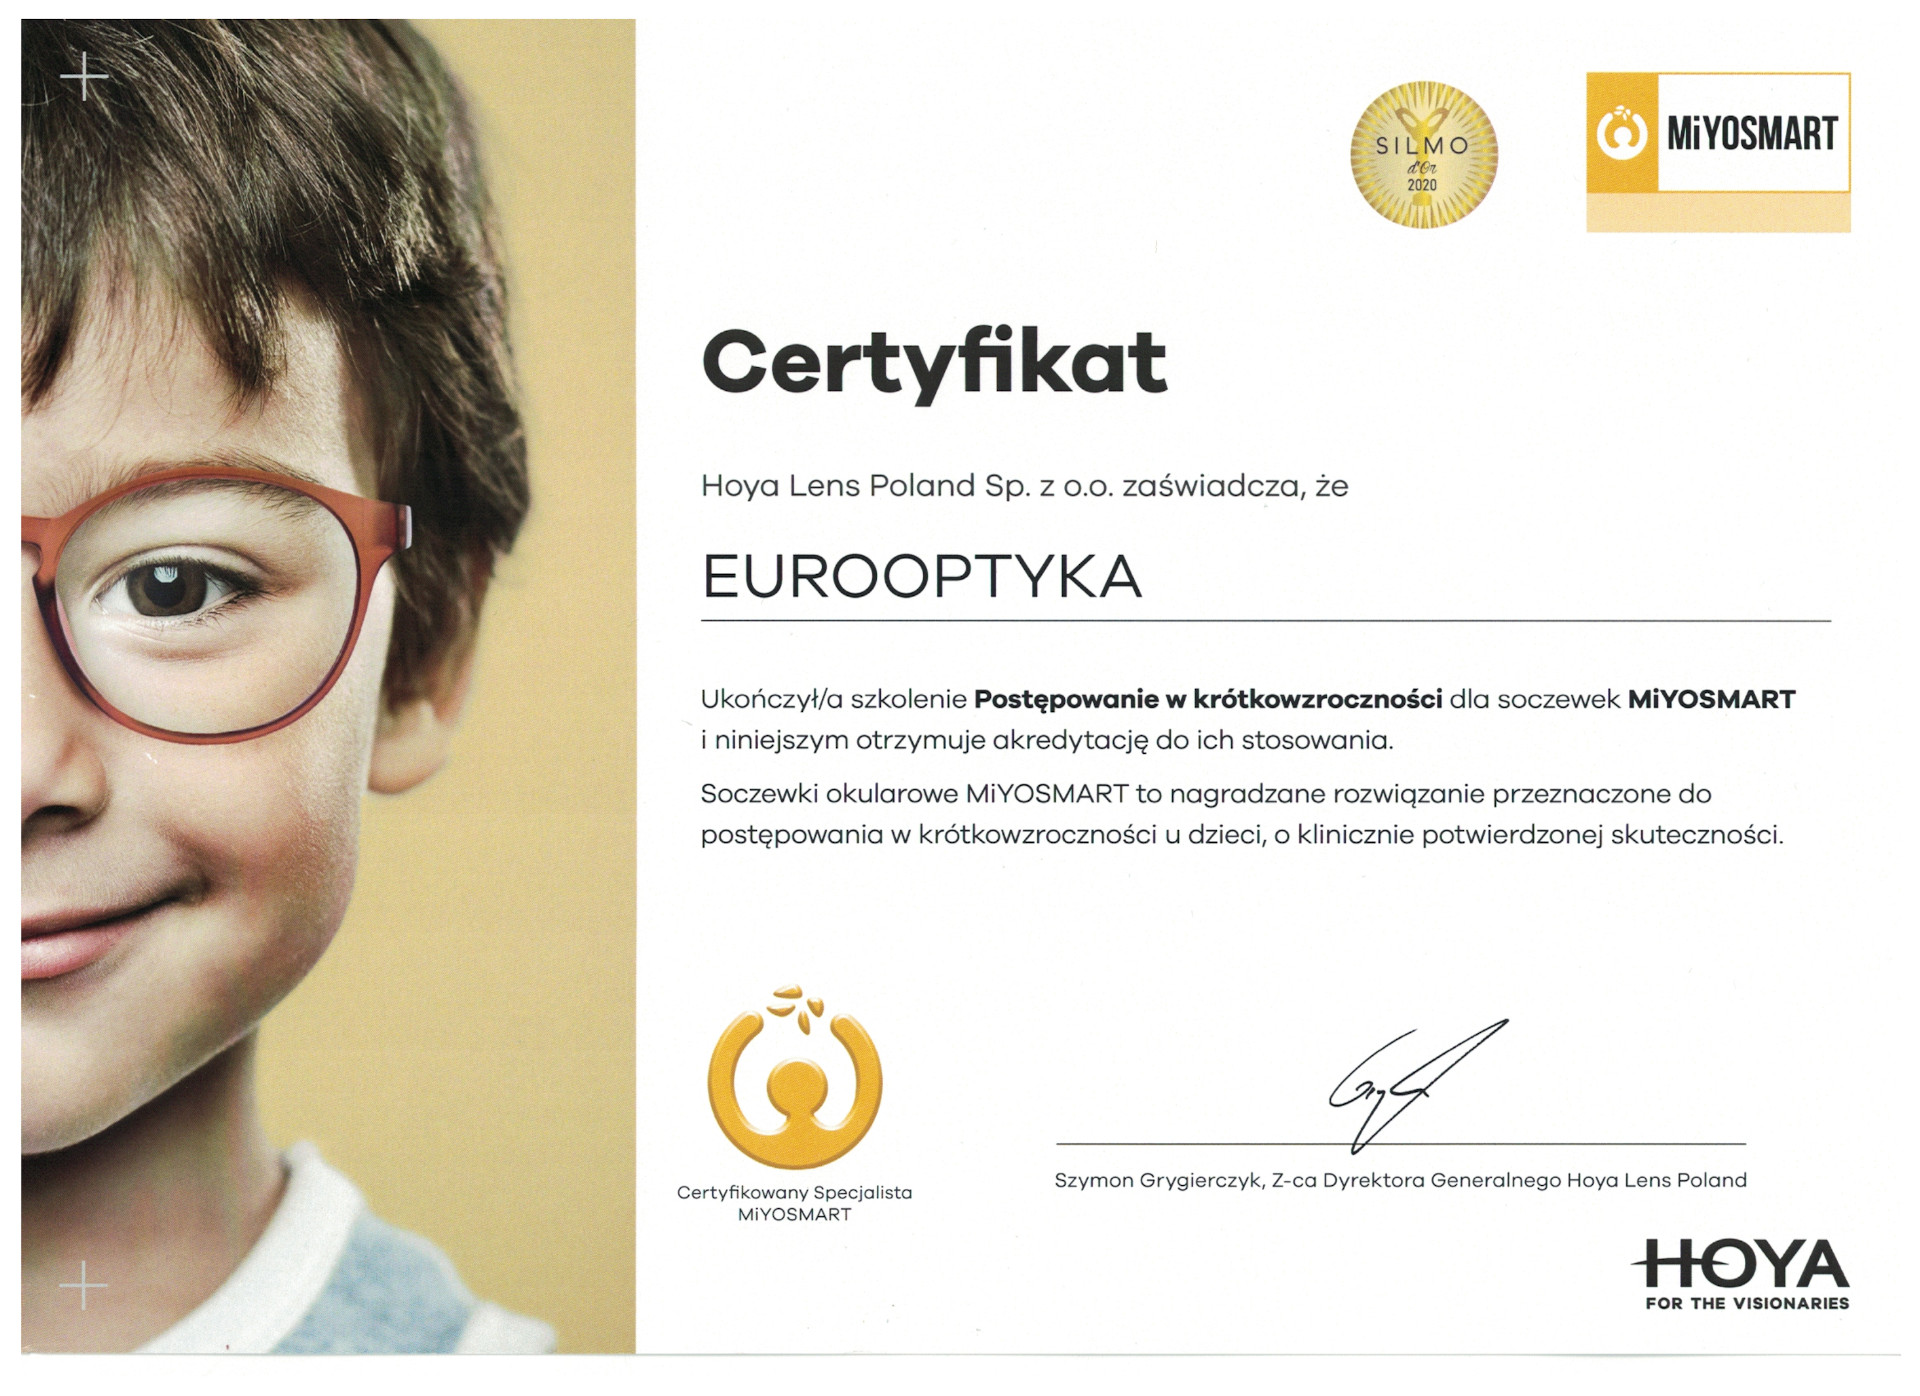 Certyfikat Hoya Lens MiYOSMART dla gabinetów Eurooptyka